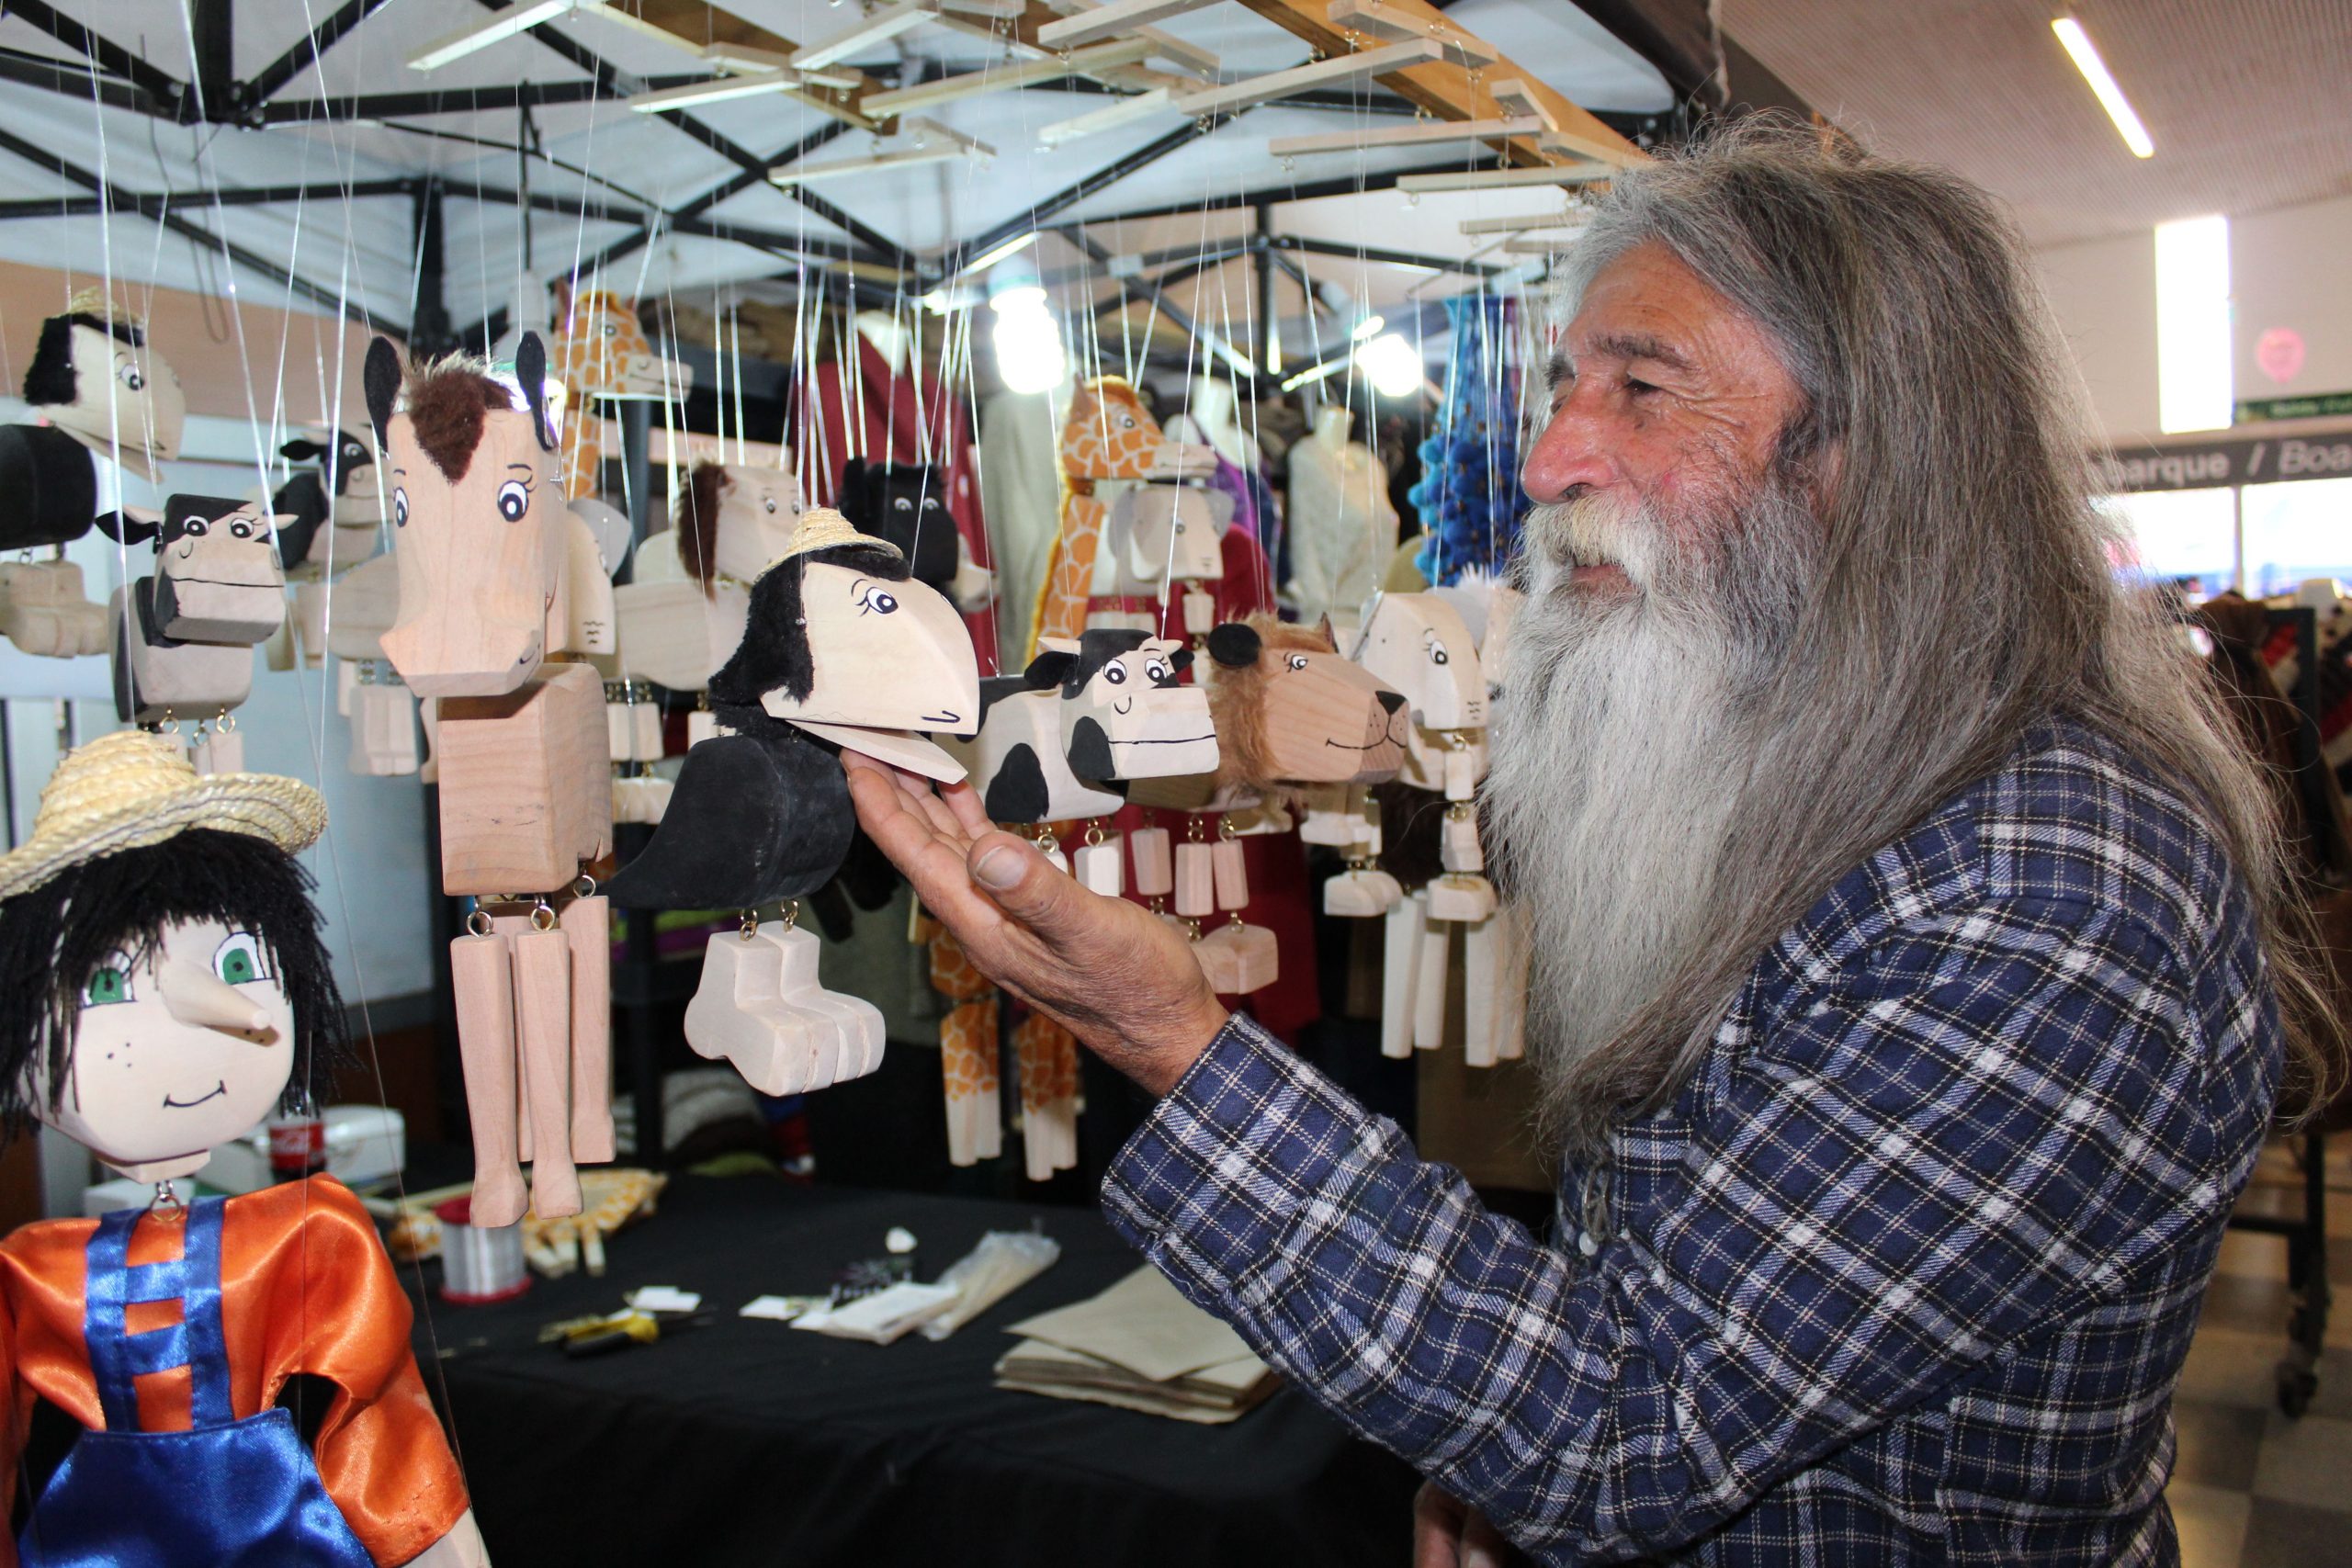 PUTAENDO: Artesano de Putaendo lleva más de 25 años haciendo marionetas de madera para estimular la imaginación de los niños